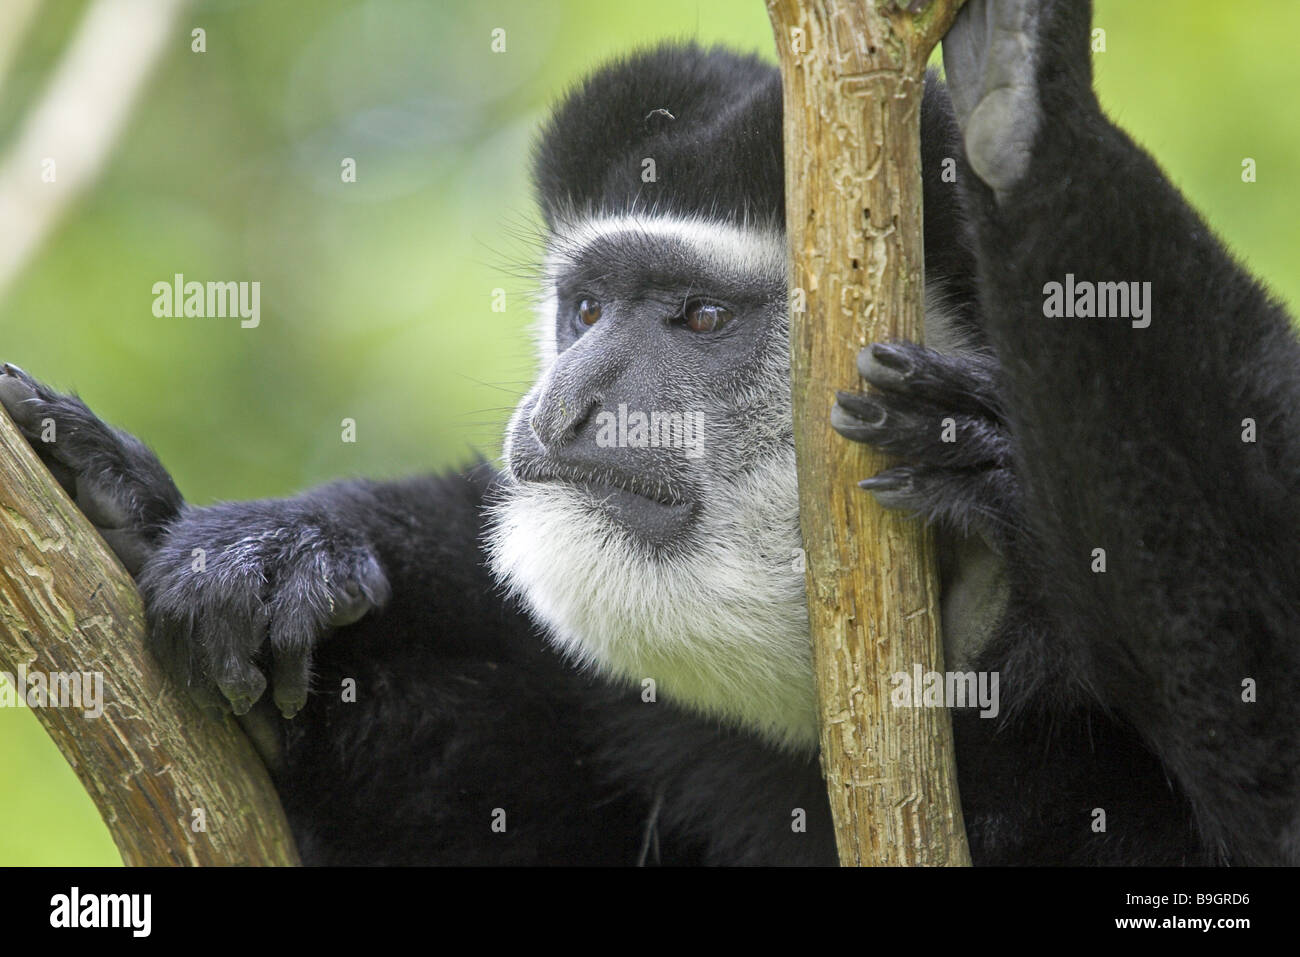 Zoo Guerza colo-bus vigilanza guereza ritratto wildlife gioco-animale mammifero monkey alto-mondo-monkey slim-monkey Foto Stock